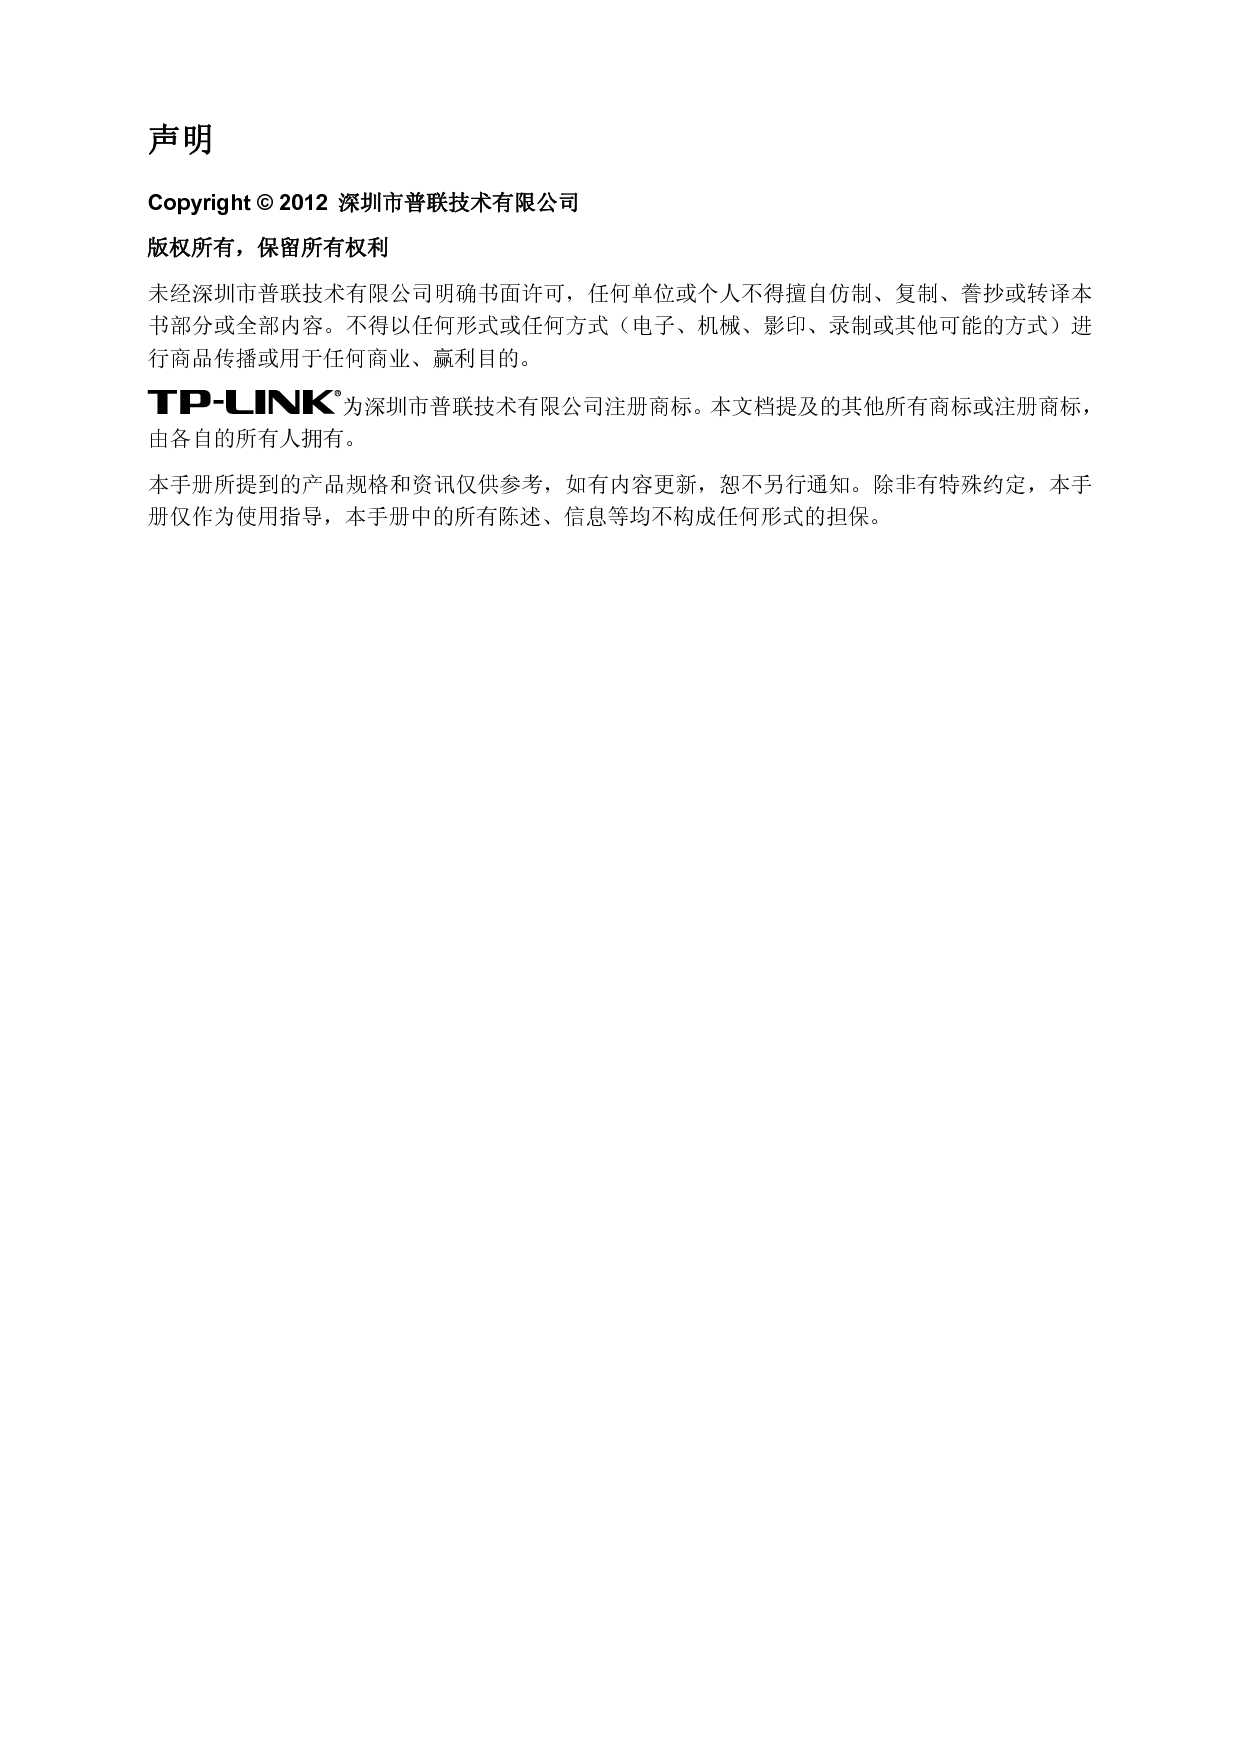 普联 TP-Link TL-PA500 设置指南 第1页